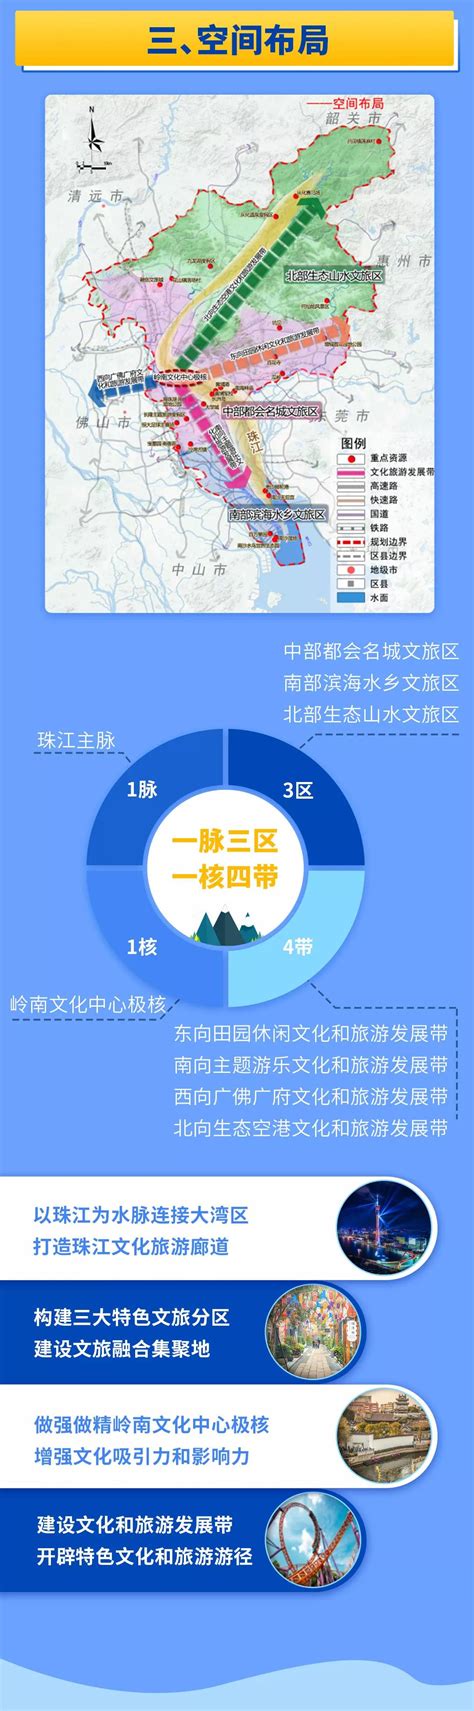 .广州发展战略城市规划设计pdf方案[原创]